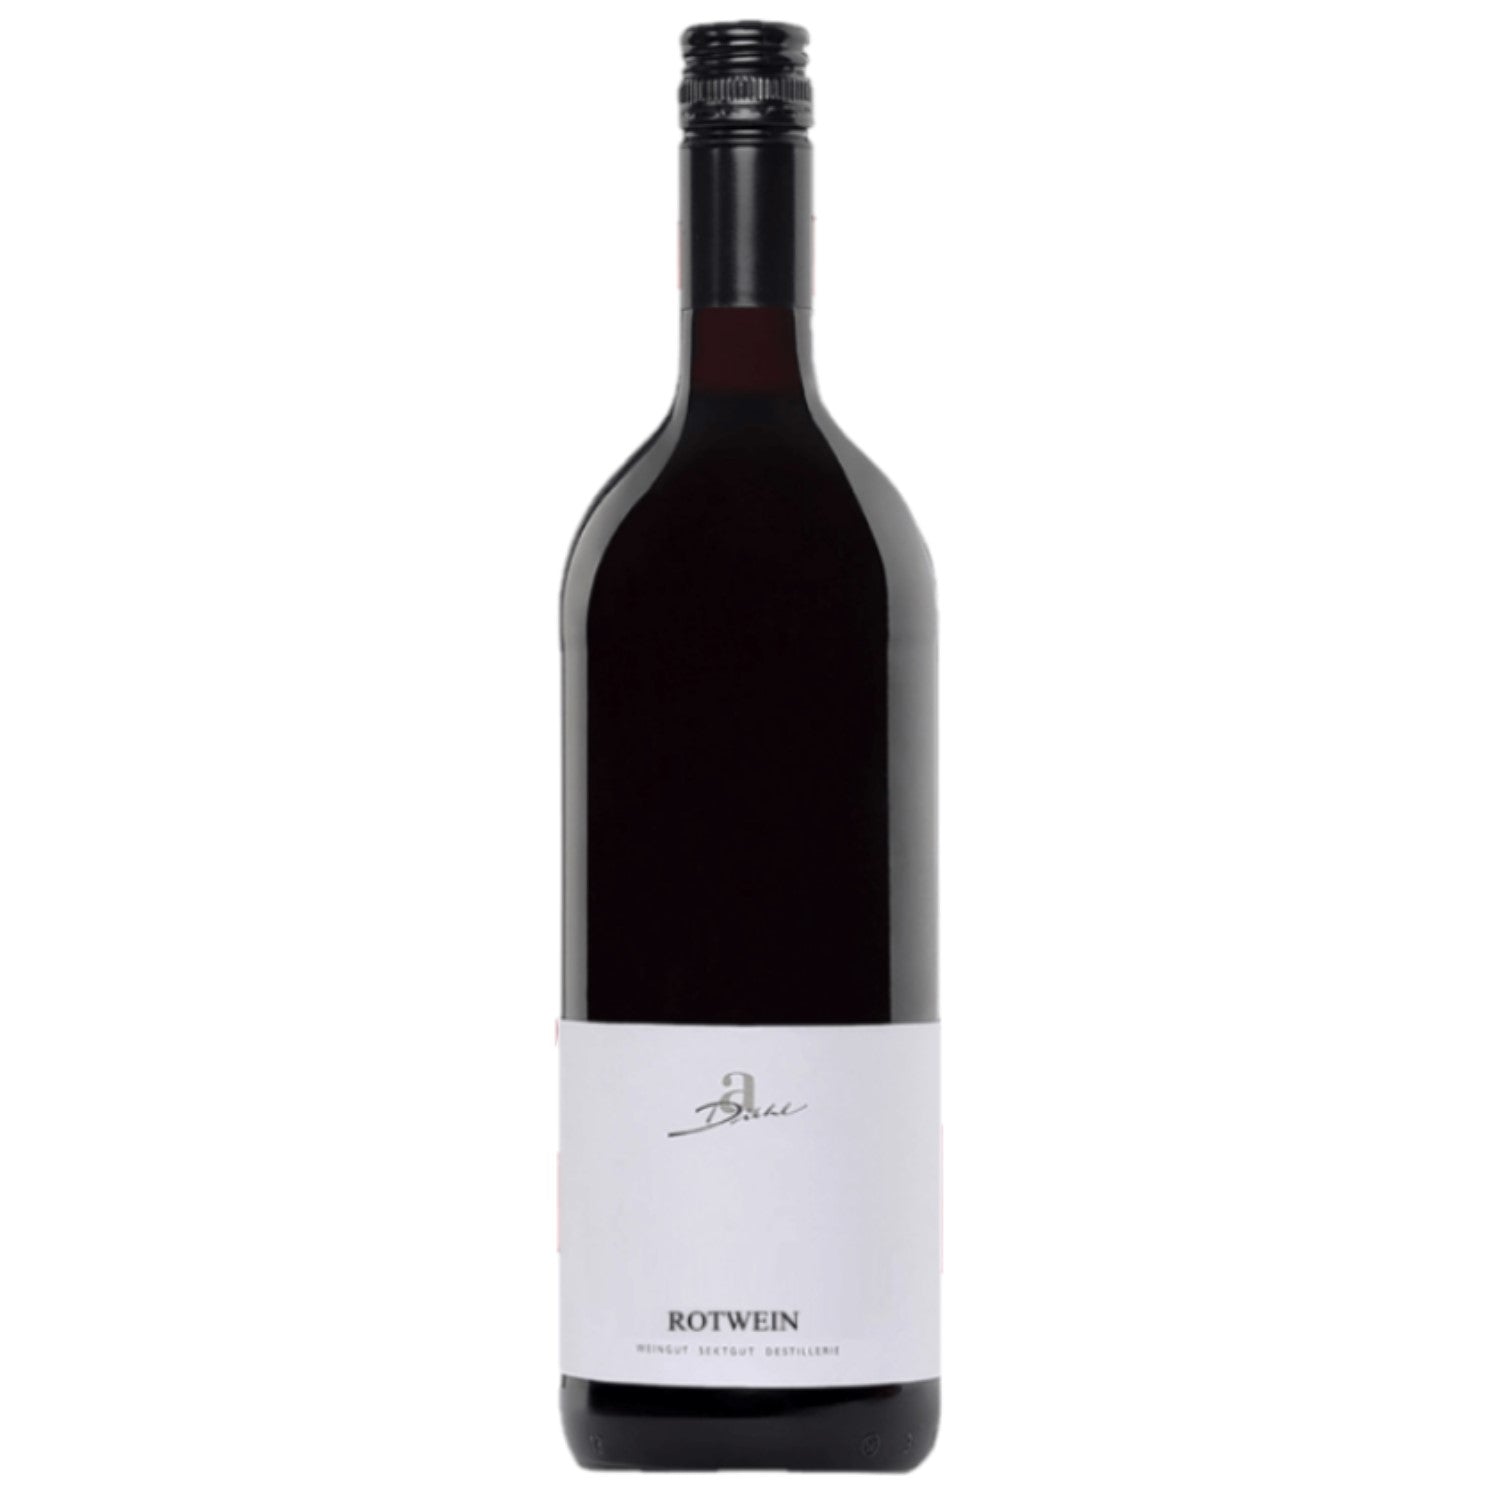 A. Diehl Rotwein Cuvée süss Pfalz Dt. Qualitätswein (6 x 1,0l) - Versanel -